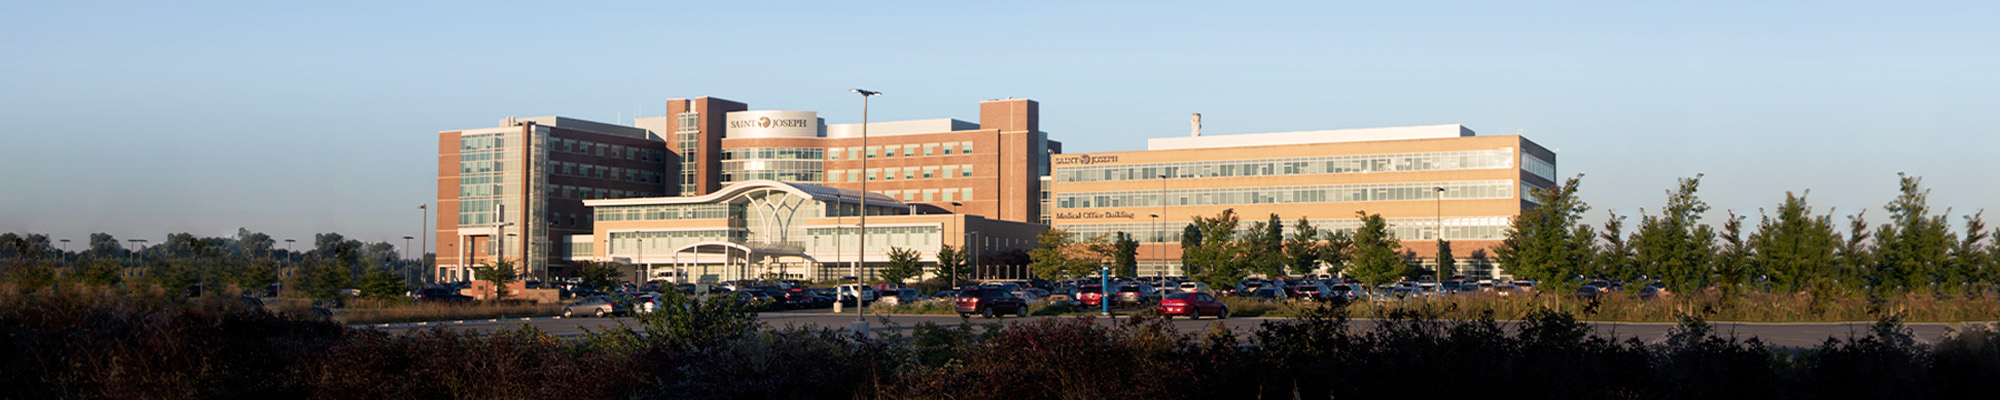 Saint Joseph Regional Medical Center Sports Medicine Institute